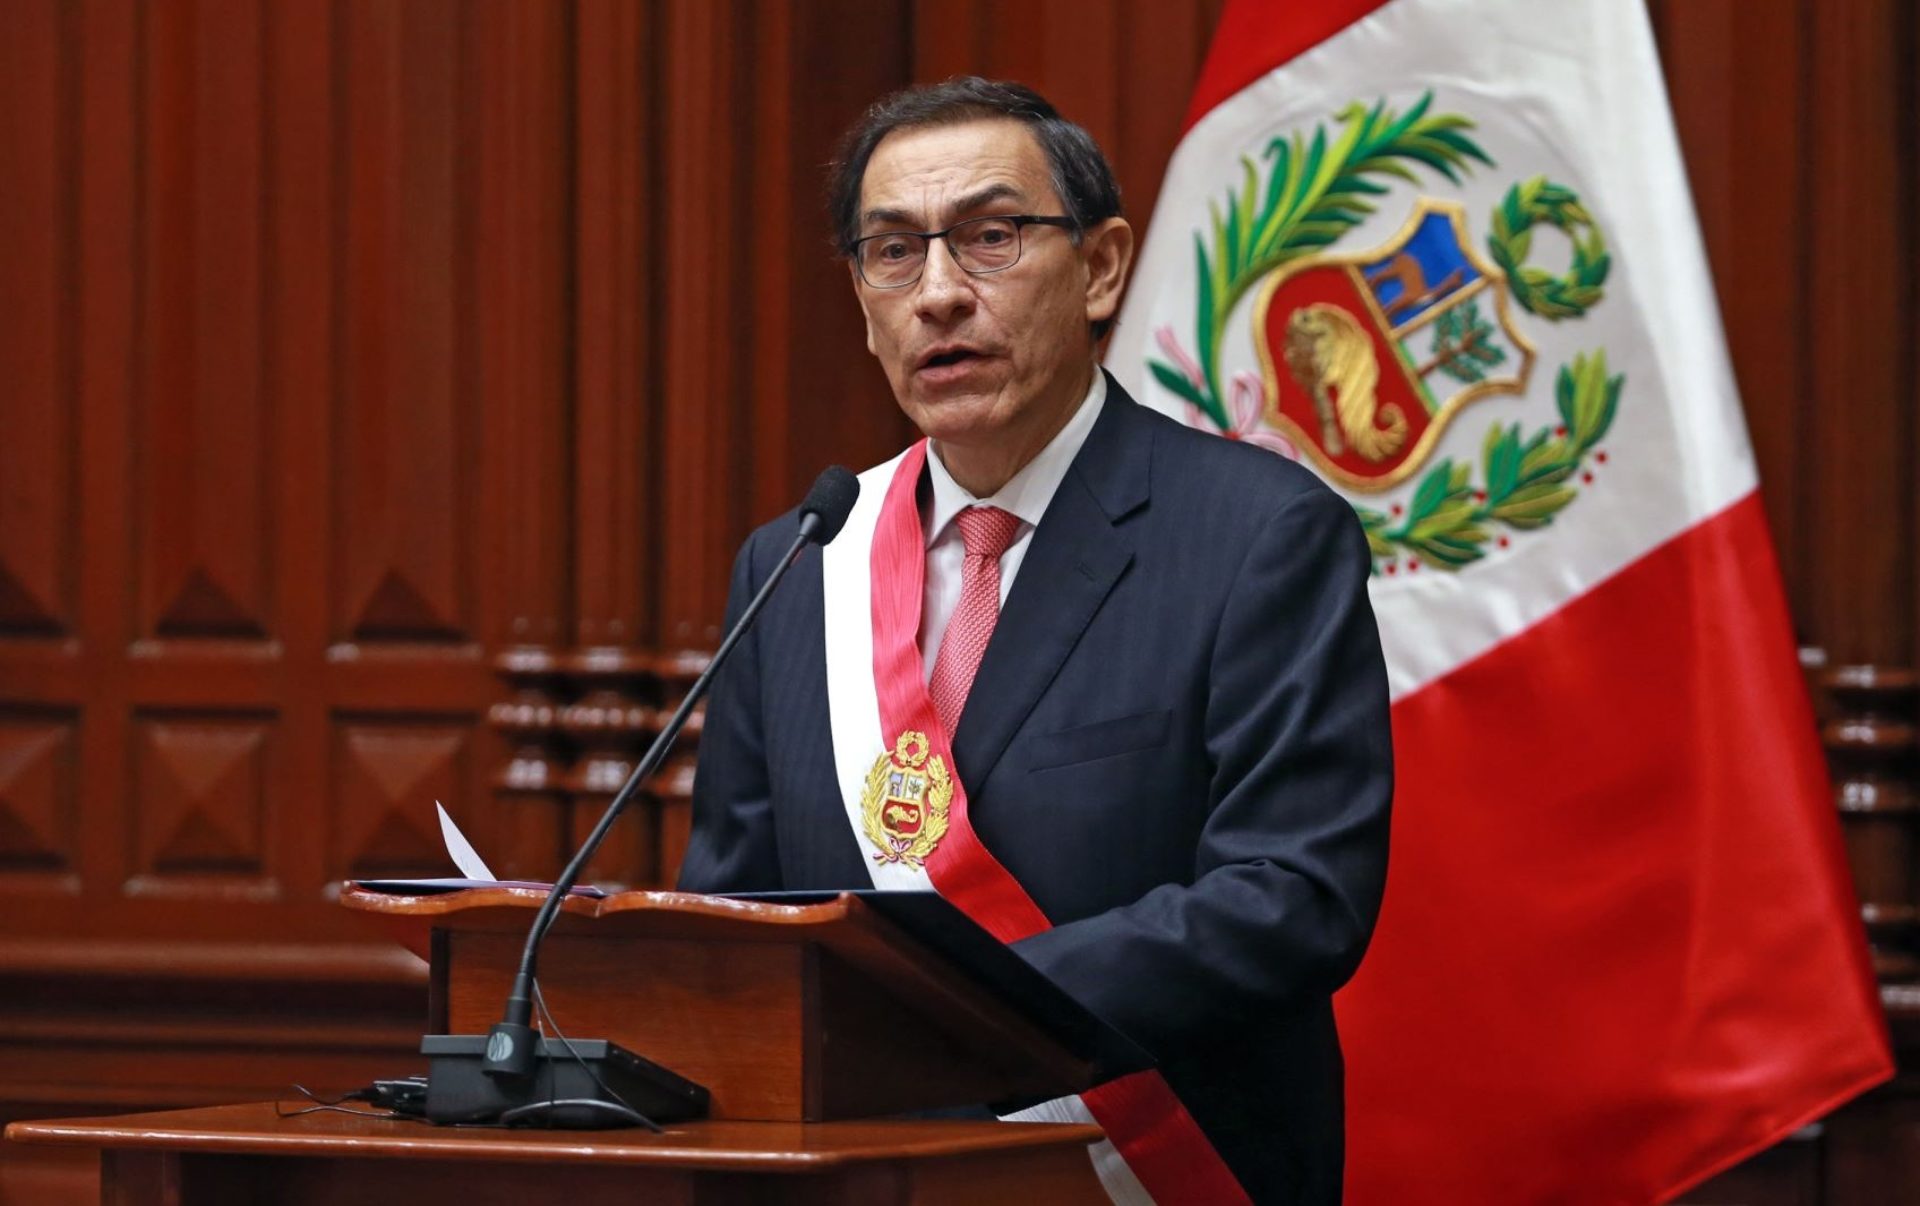 Martín Vizcarra Perfil del nuevo presidente del Perú BBVA